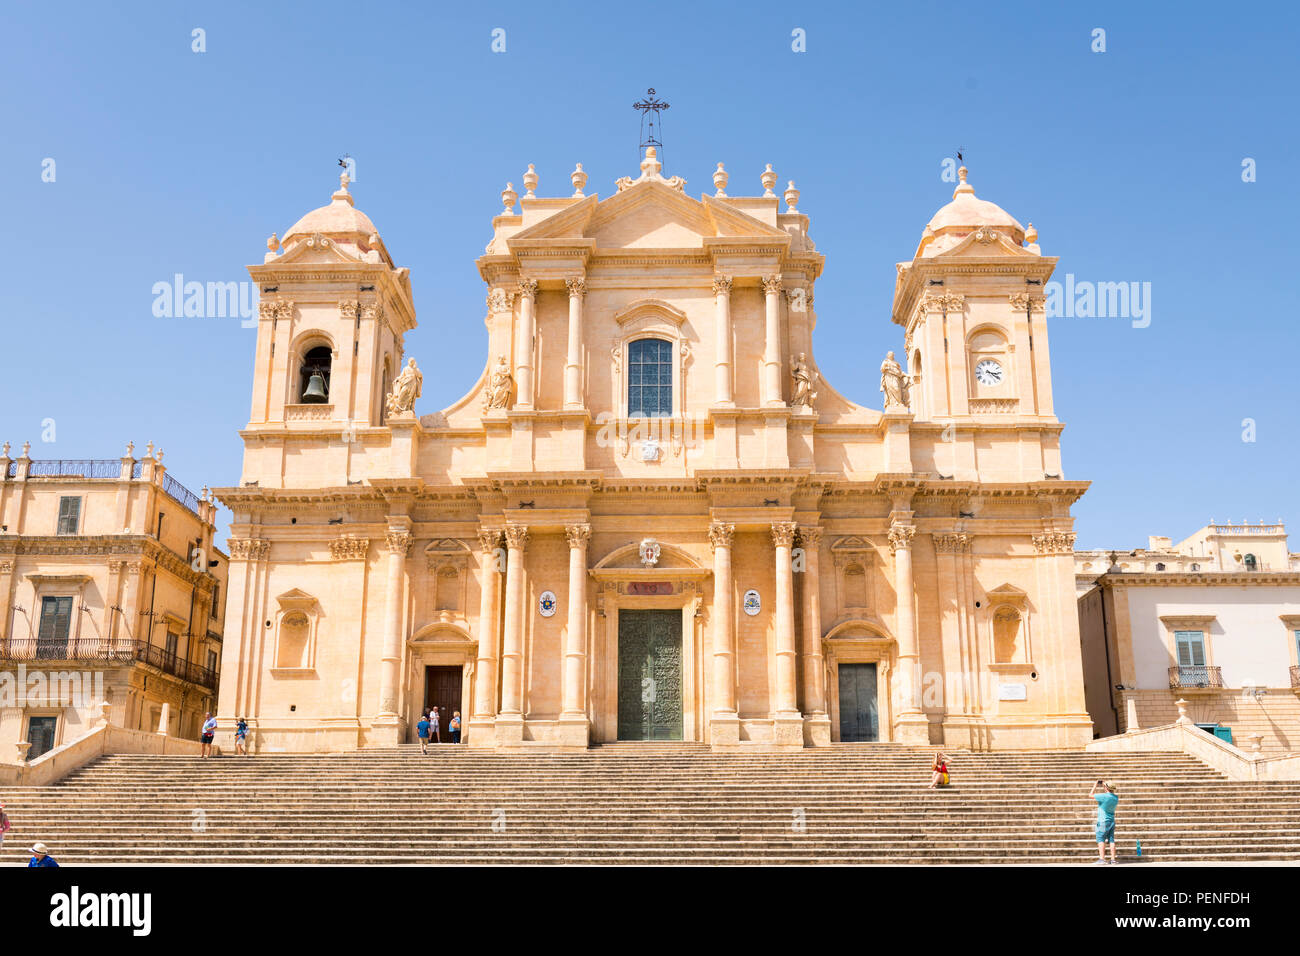 Italien Sizilien antike Netum Noto Antica Mount Alveria wieder aufgebaut nach 1693 Erdbeben barocke Fassade der Kathedrale Duomo gebaut 1776 San Nicolo Kreuz Stockfoto